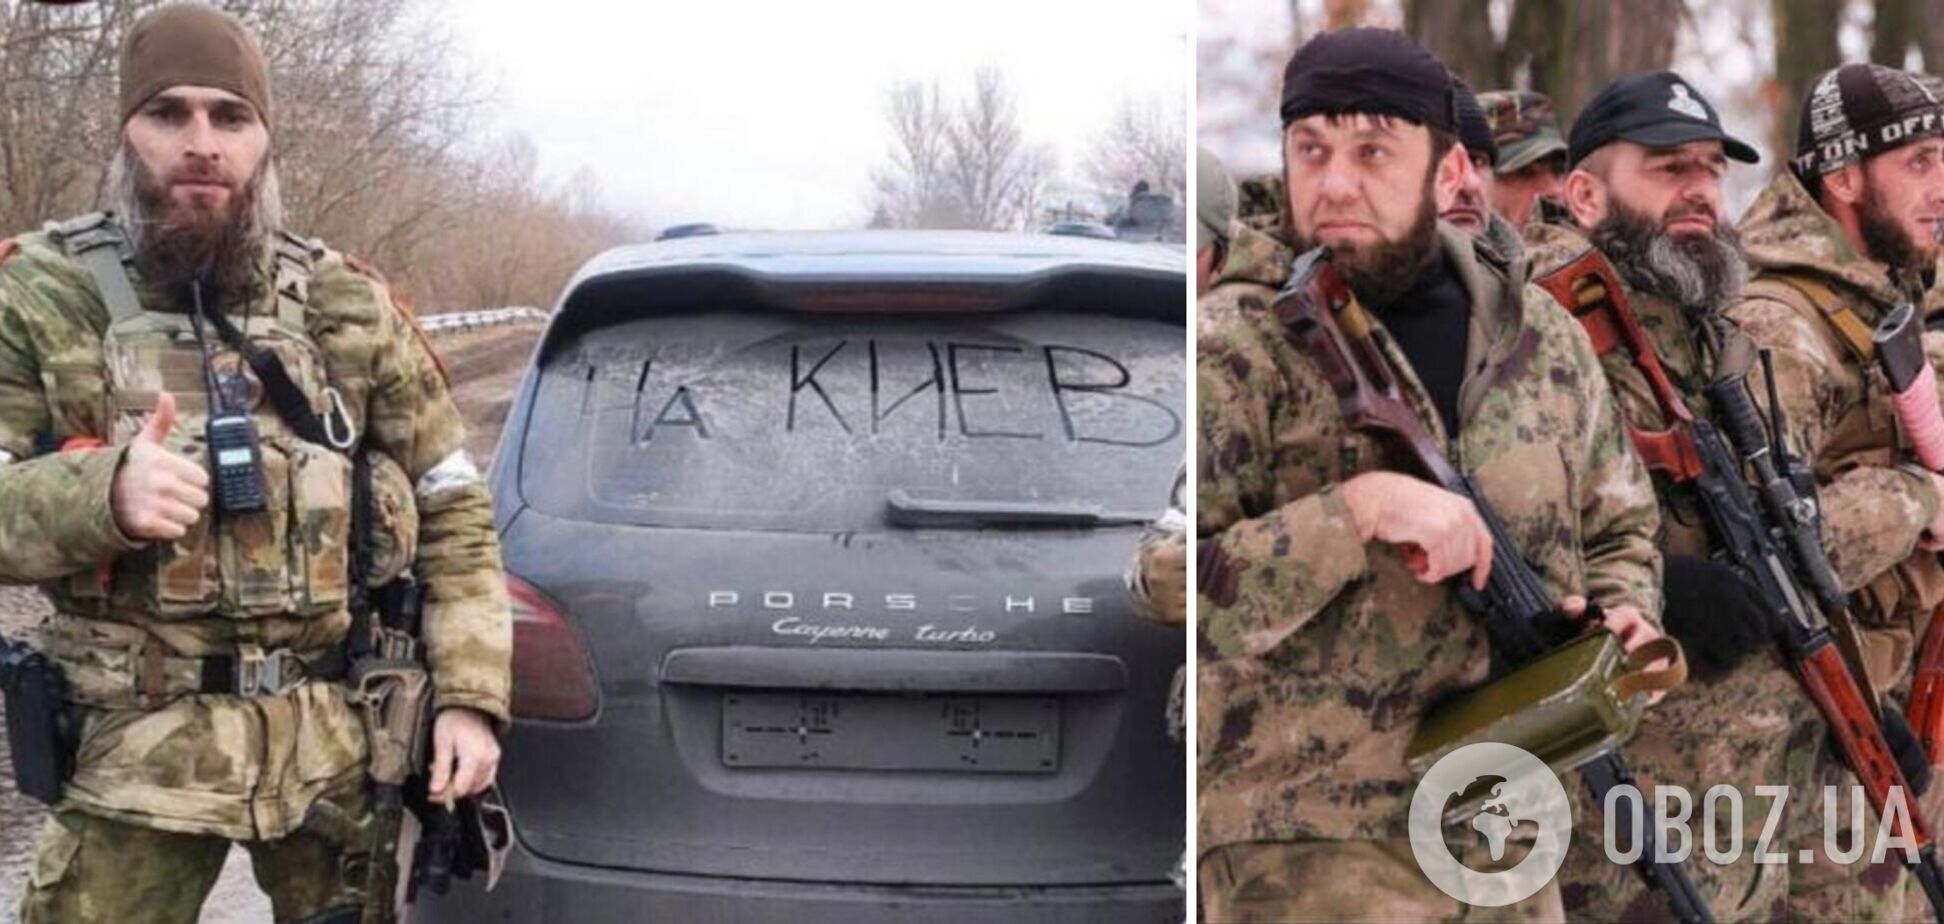 Кадировці заселилися до готелю на Київщині: на них оголосили 'полювання'. Відео